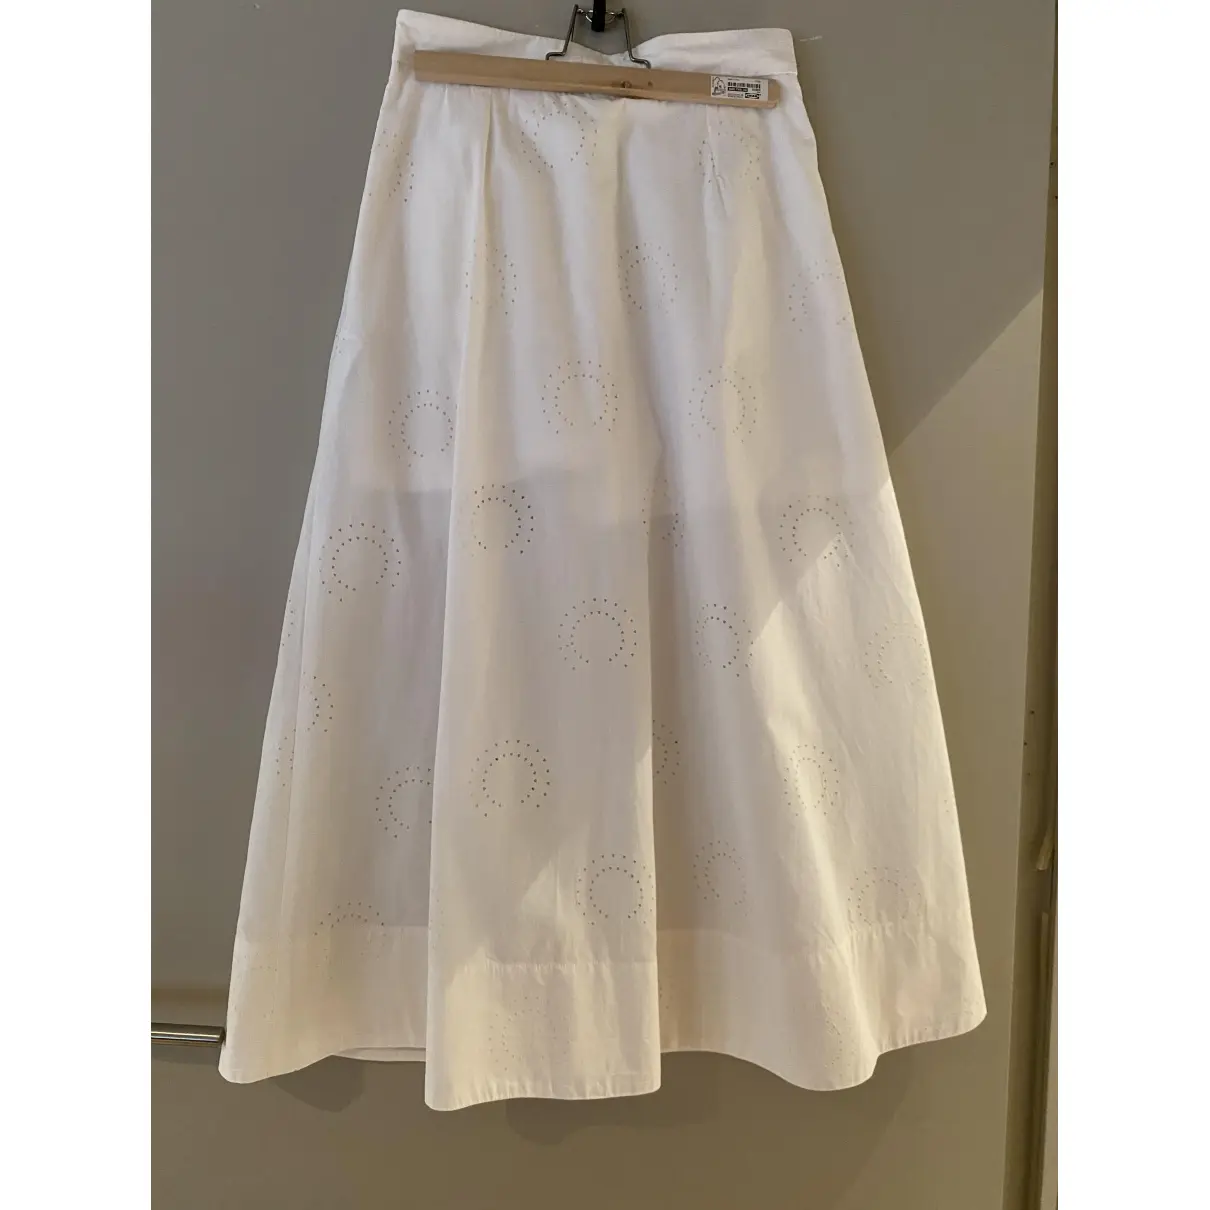 Buy Maje Spring Summer 2019 mid-length skirt online